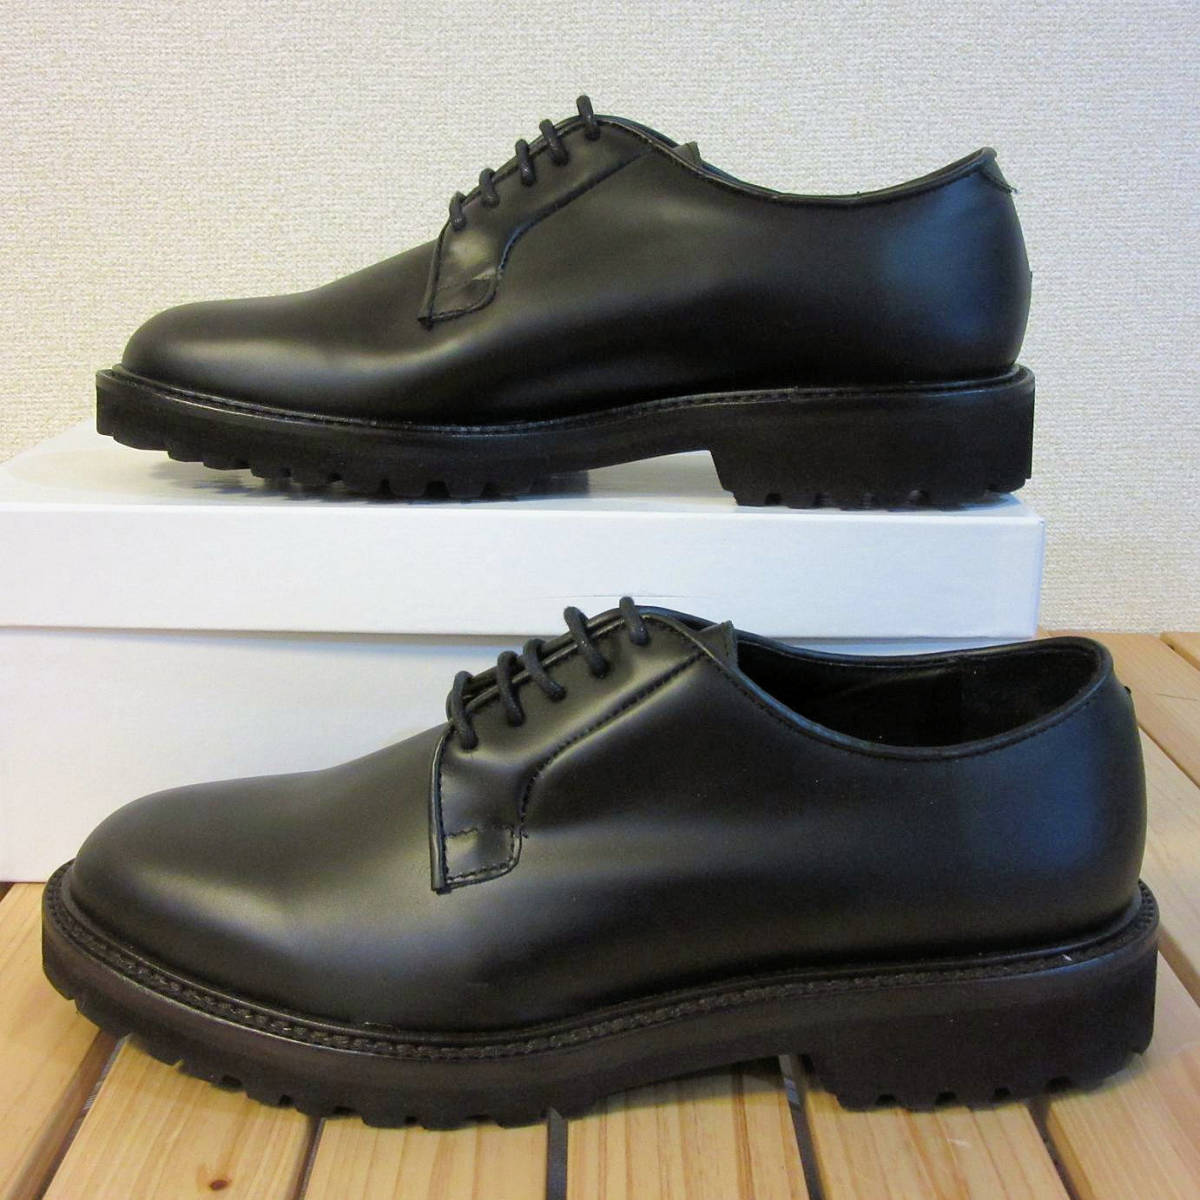 未使用 訳有 BOEMOS ボエモス イタリア製 レザーシューズ 革靴 プレーントゥ シューズ ビジネスシューズ ブラック 黒 メンズ 42 27cm 程度